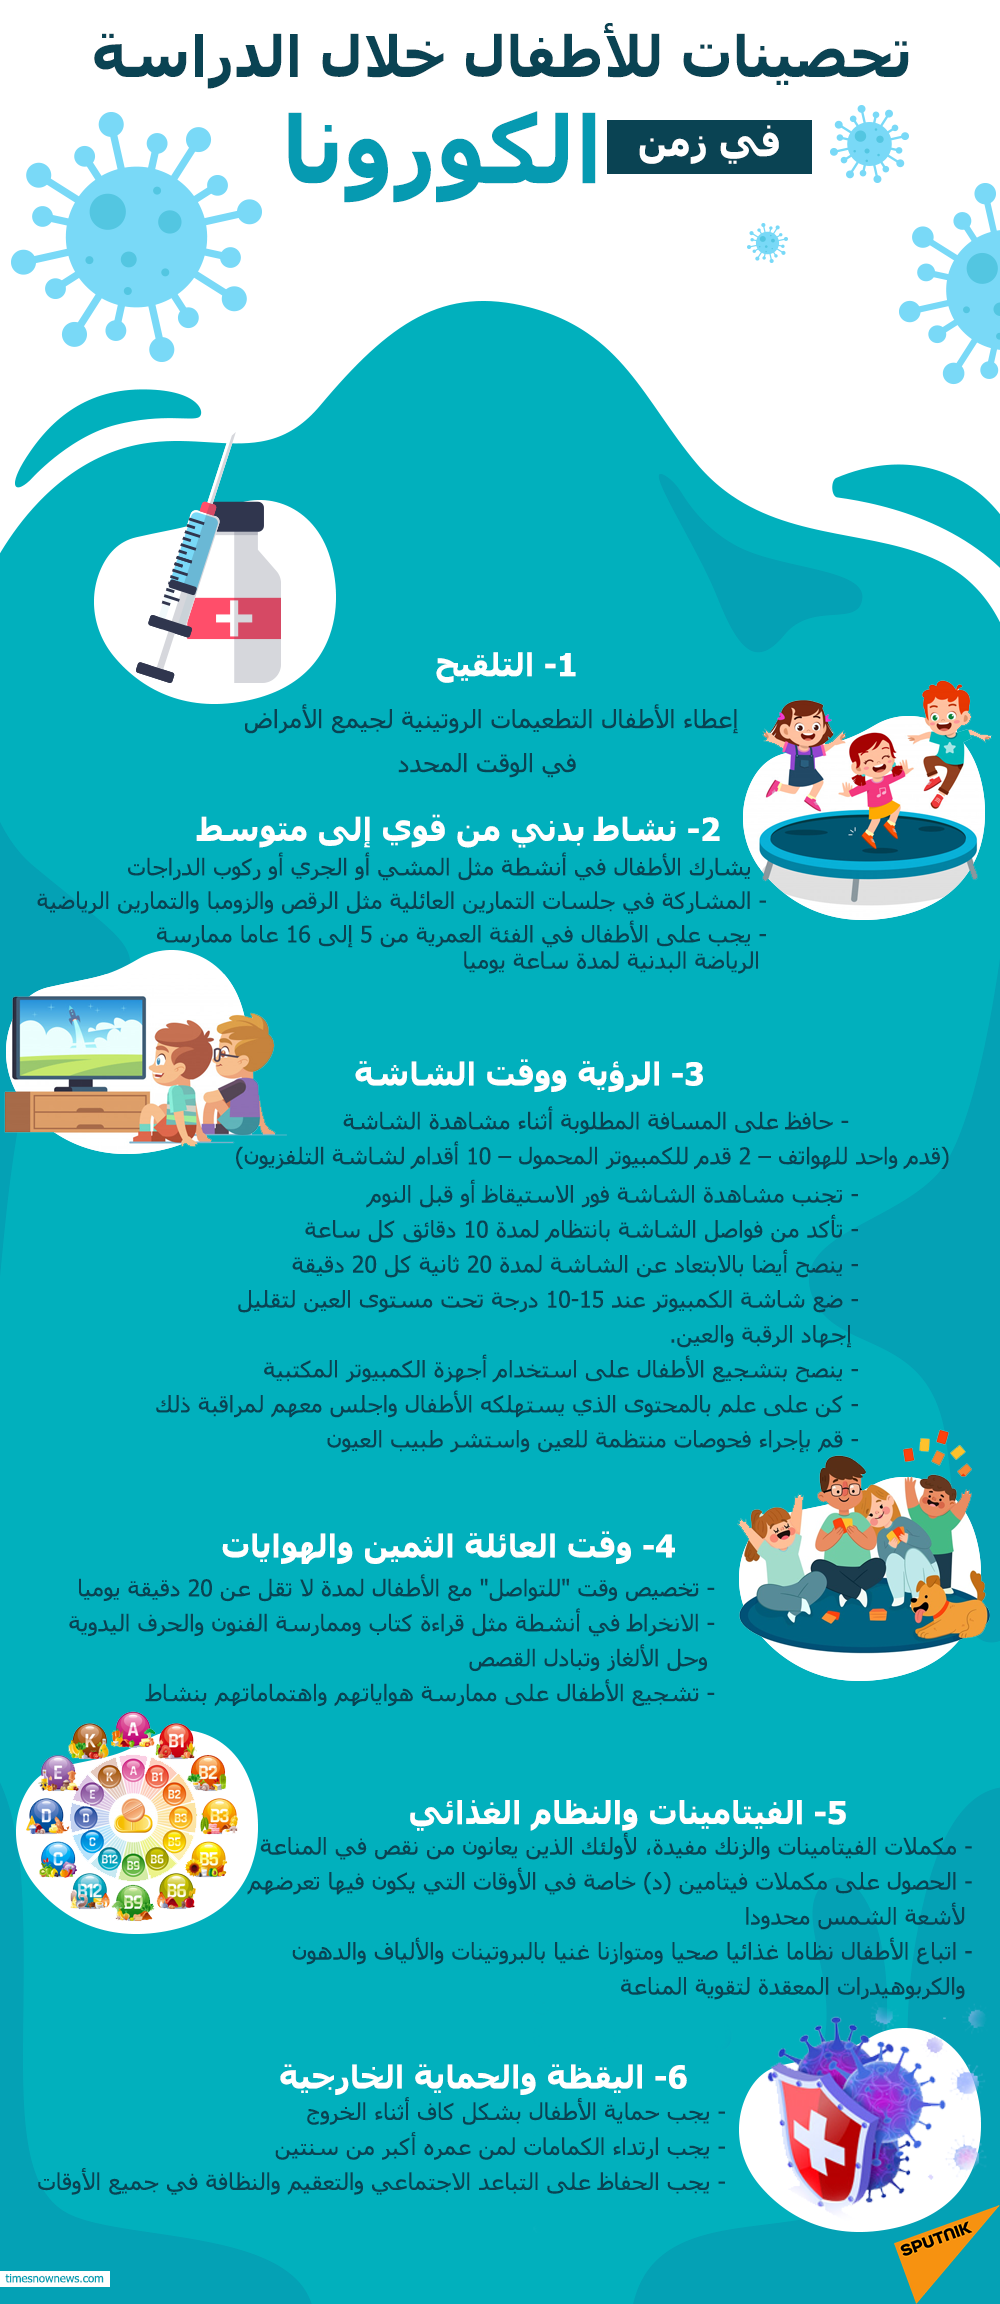 6 تحصينات للأطفال خلال الدراسة في زمن الكورونا - سبوتنيك عربي